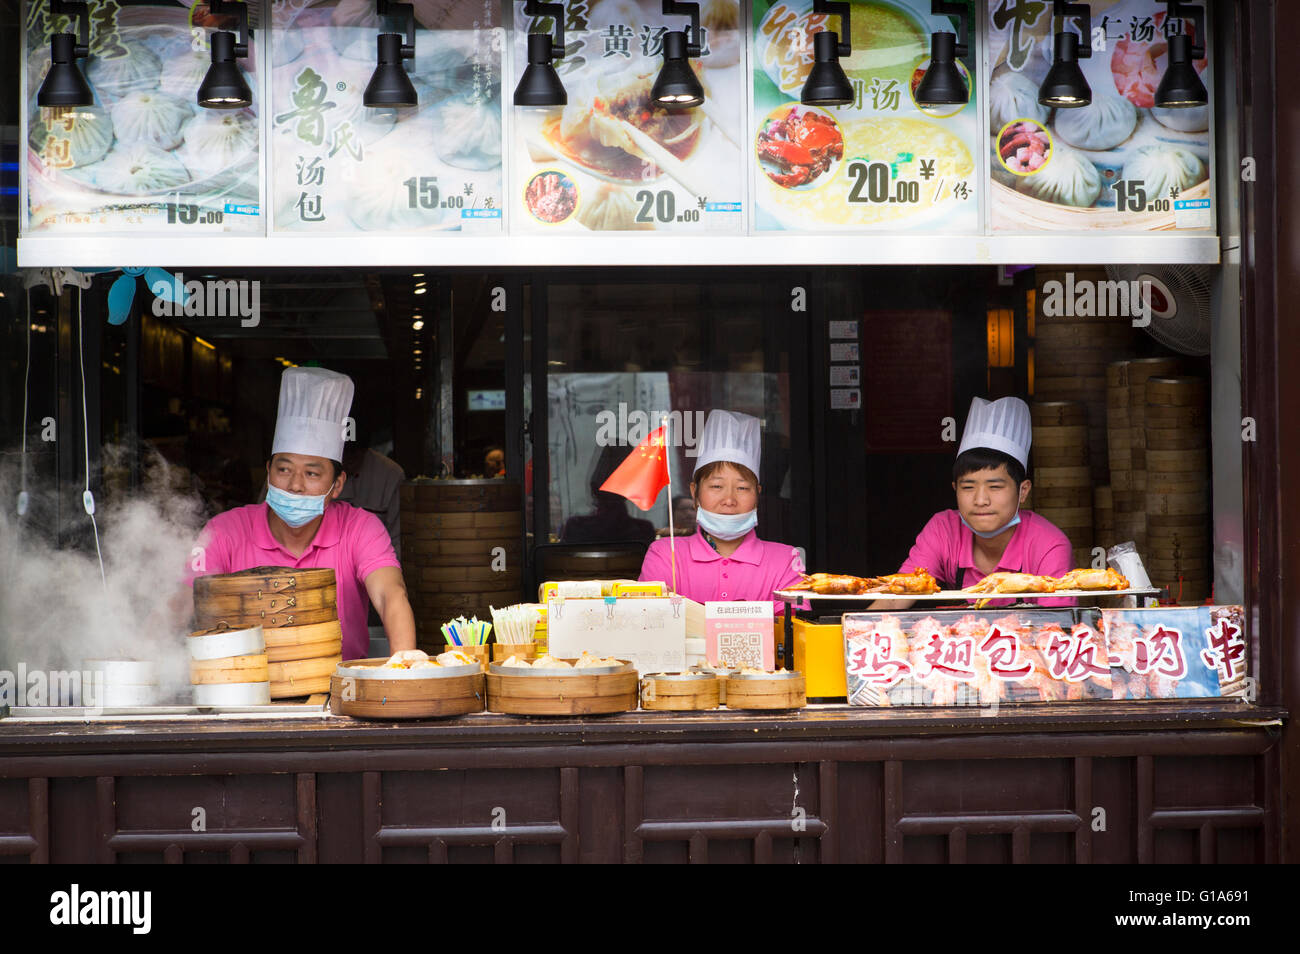 Los cocineros chinos con máscaras contra la contaminación del aire la venta de alimentos en una calle de Nanjing, China Foto de stock